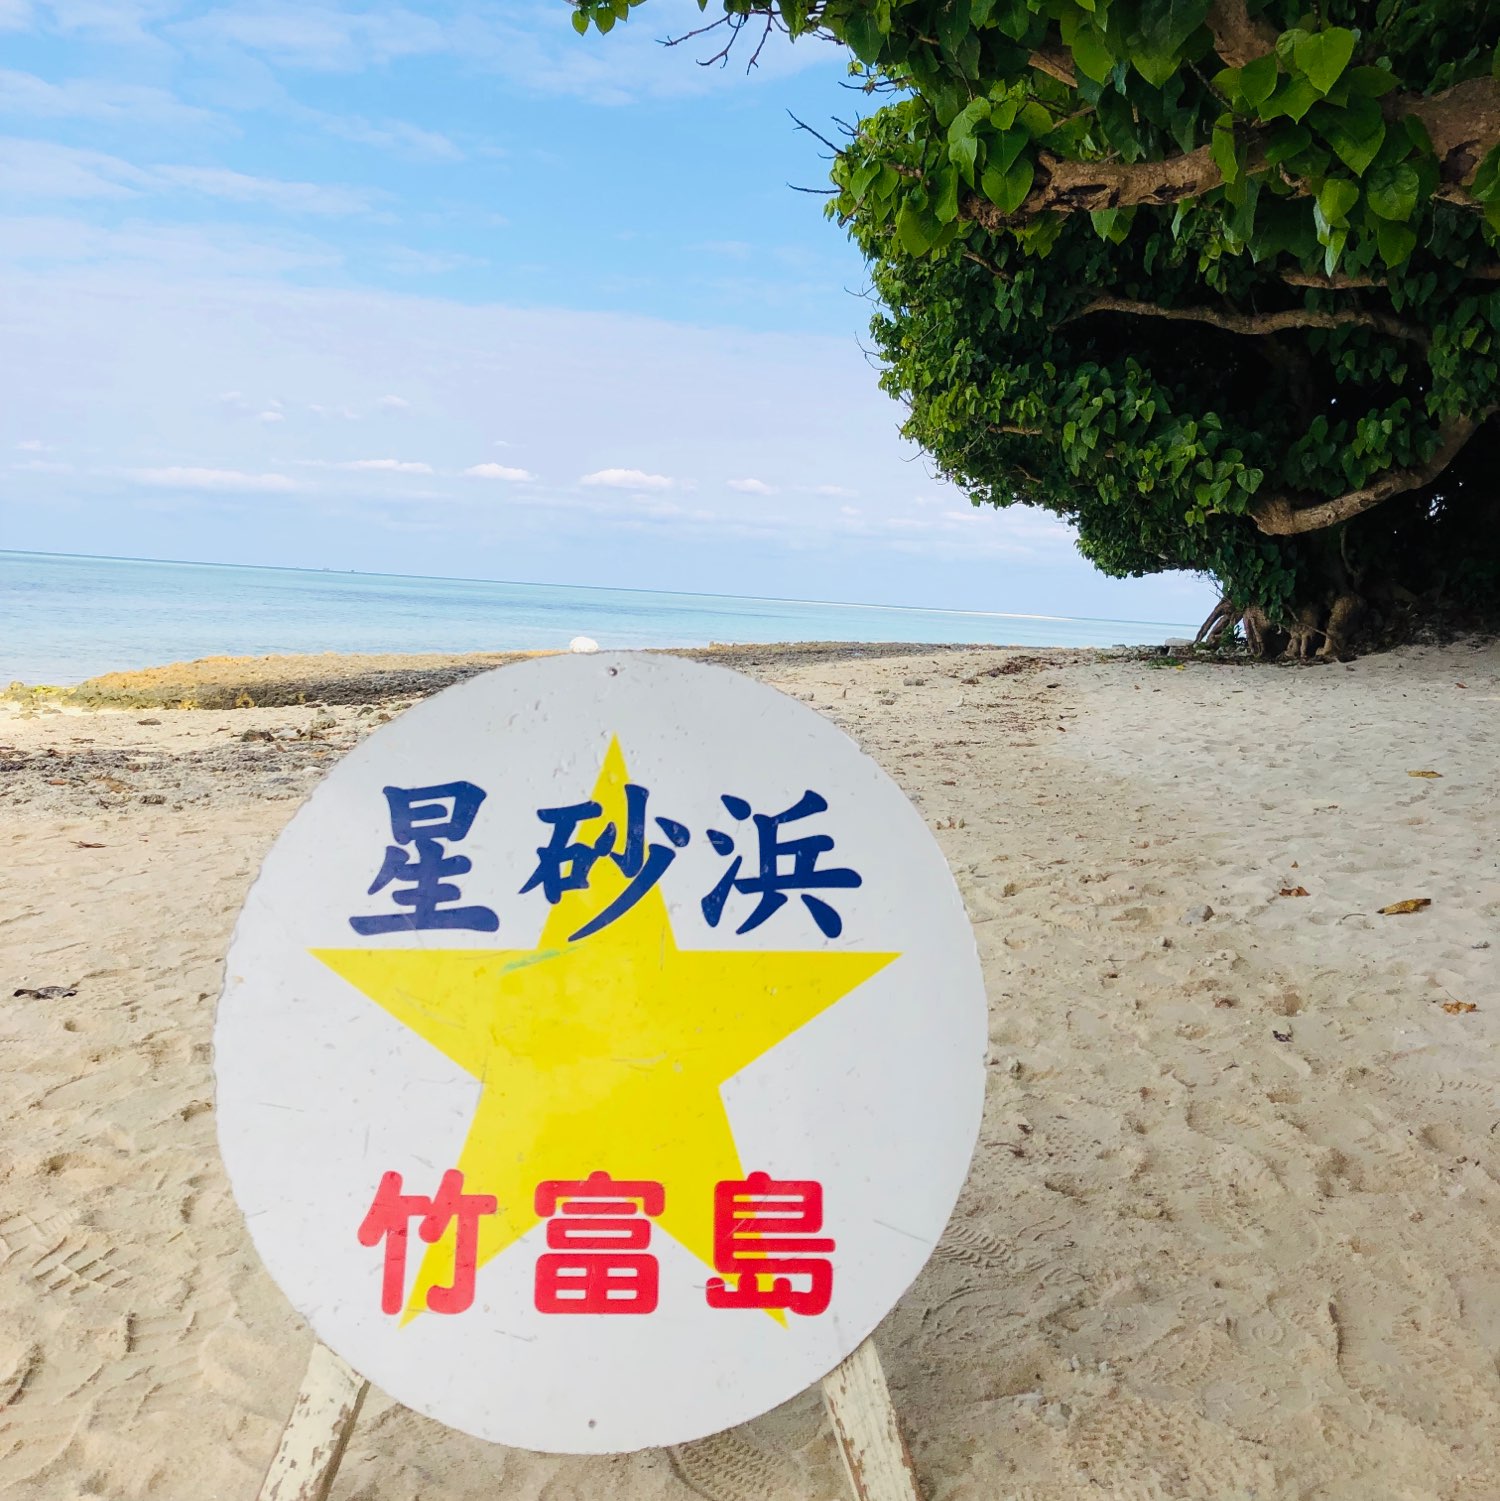 【冲绳】在偏远岛屿上发现的星砂海滩